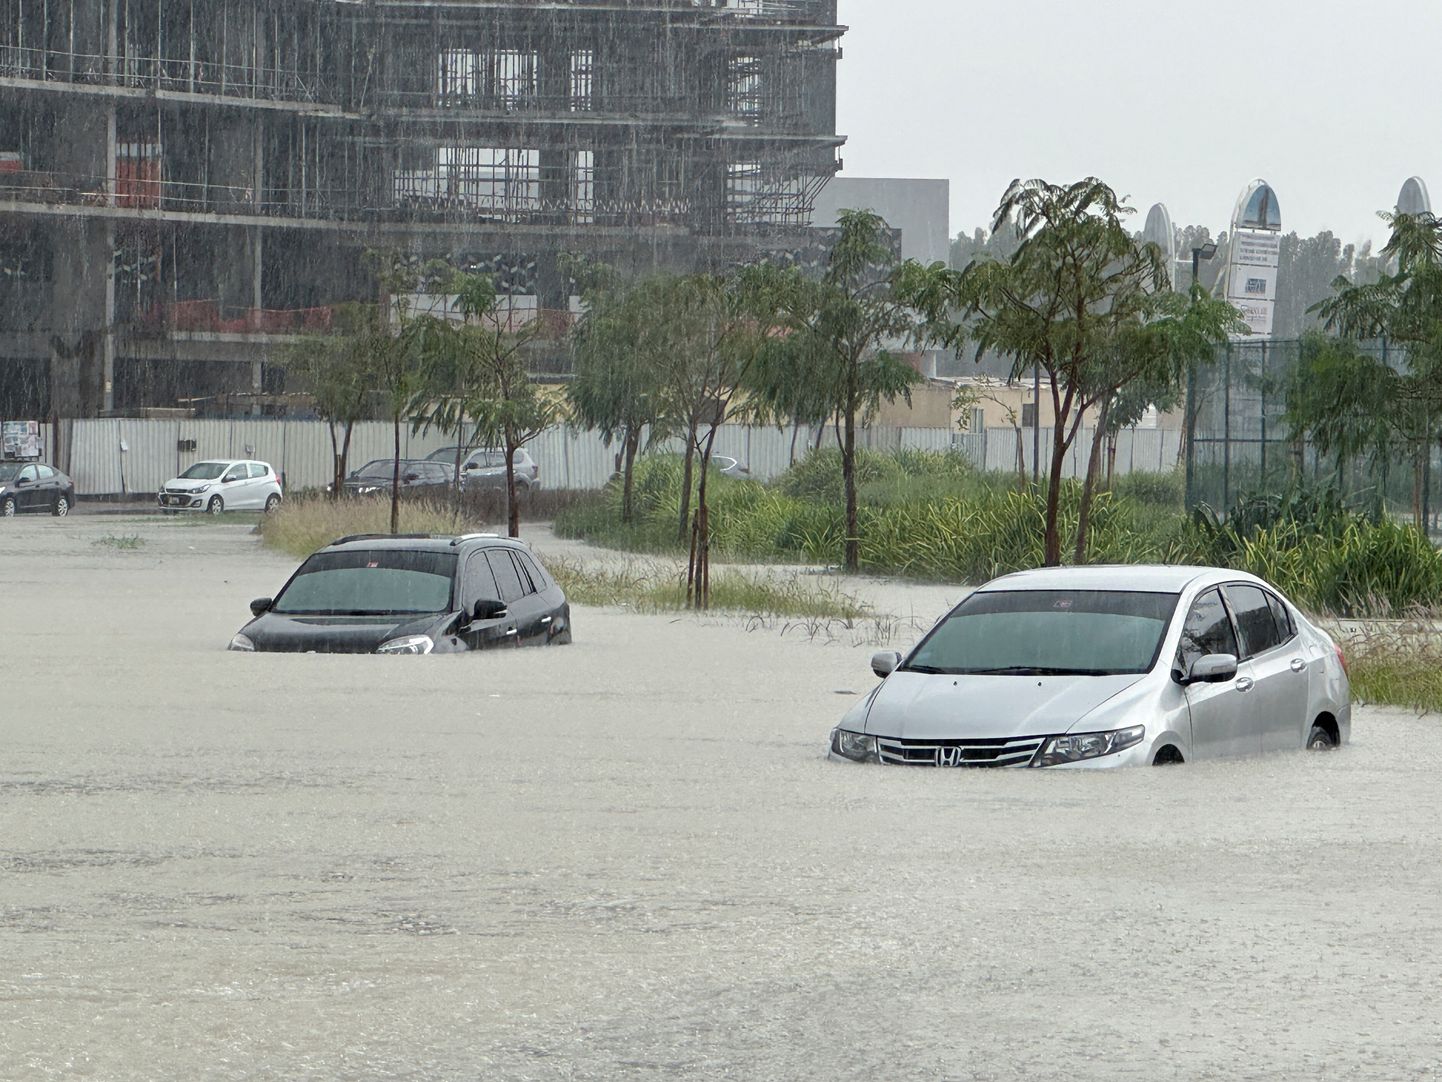 Vee alla jäänud autod täna Dubais.